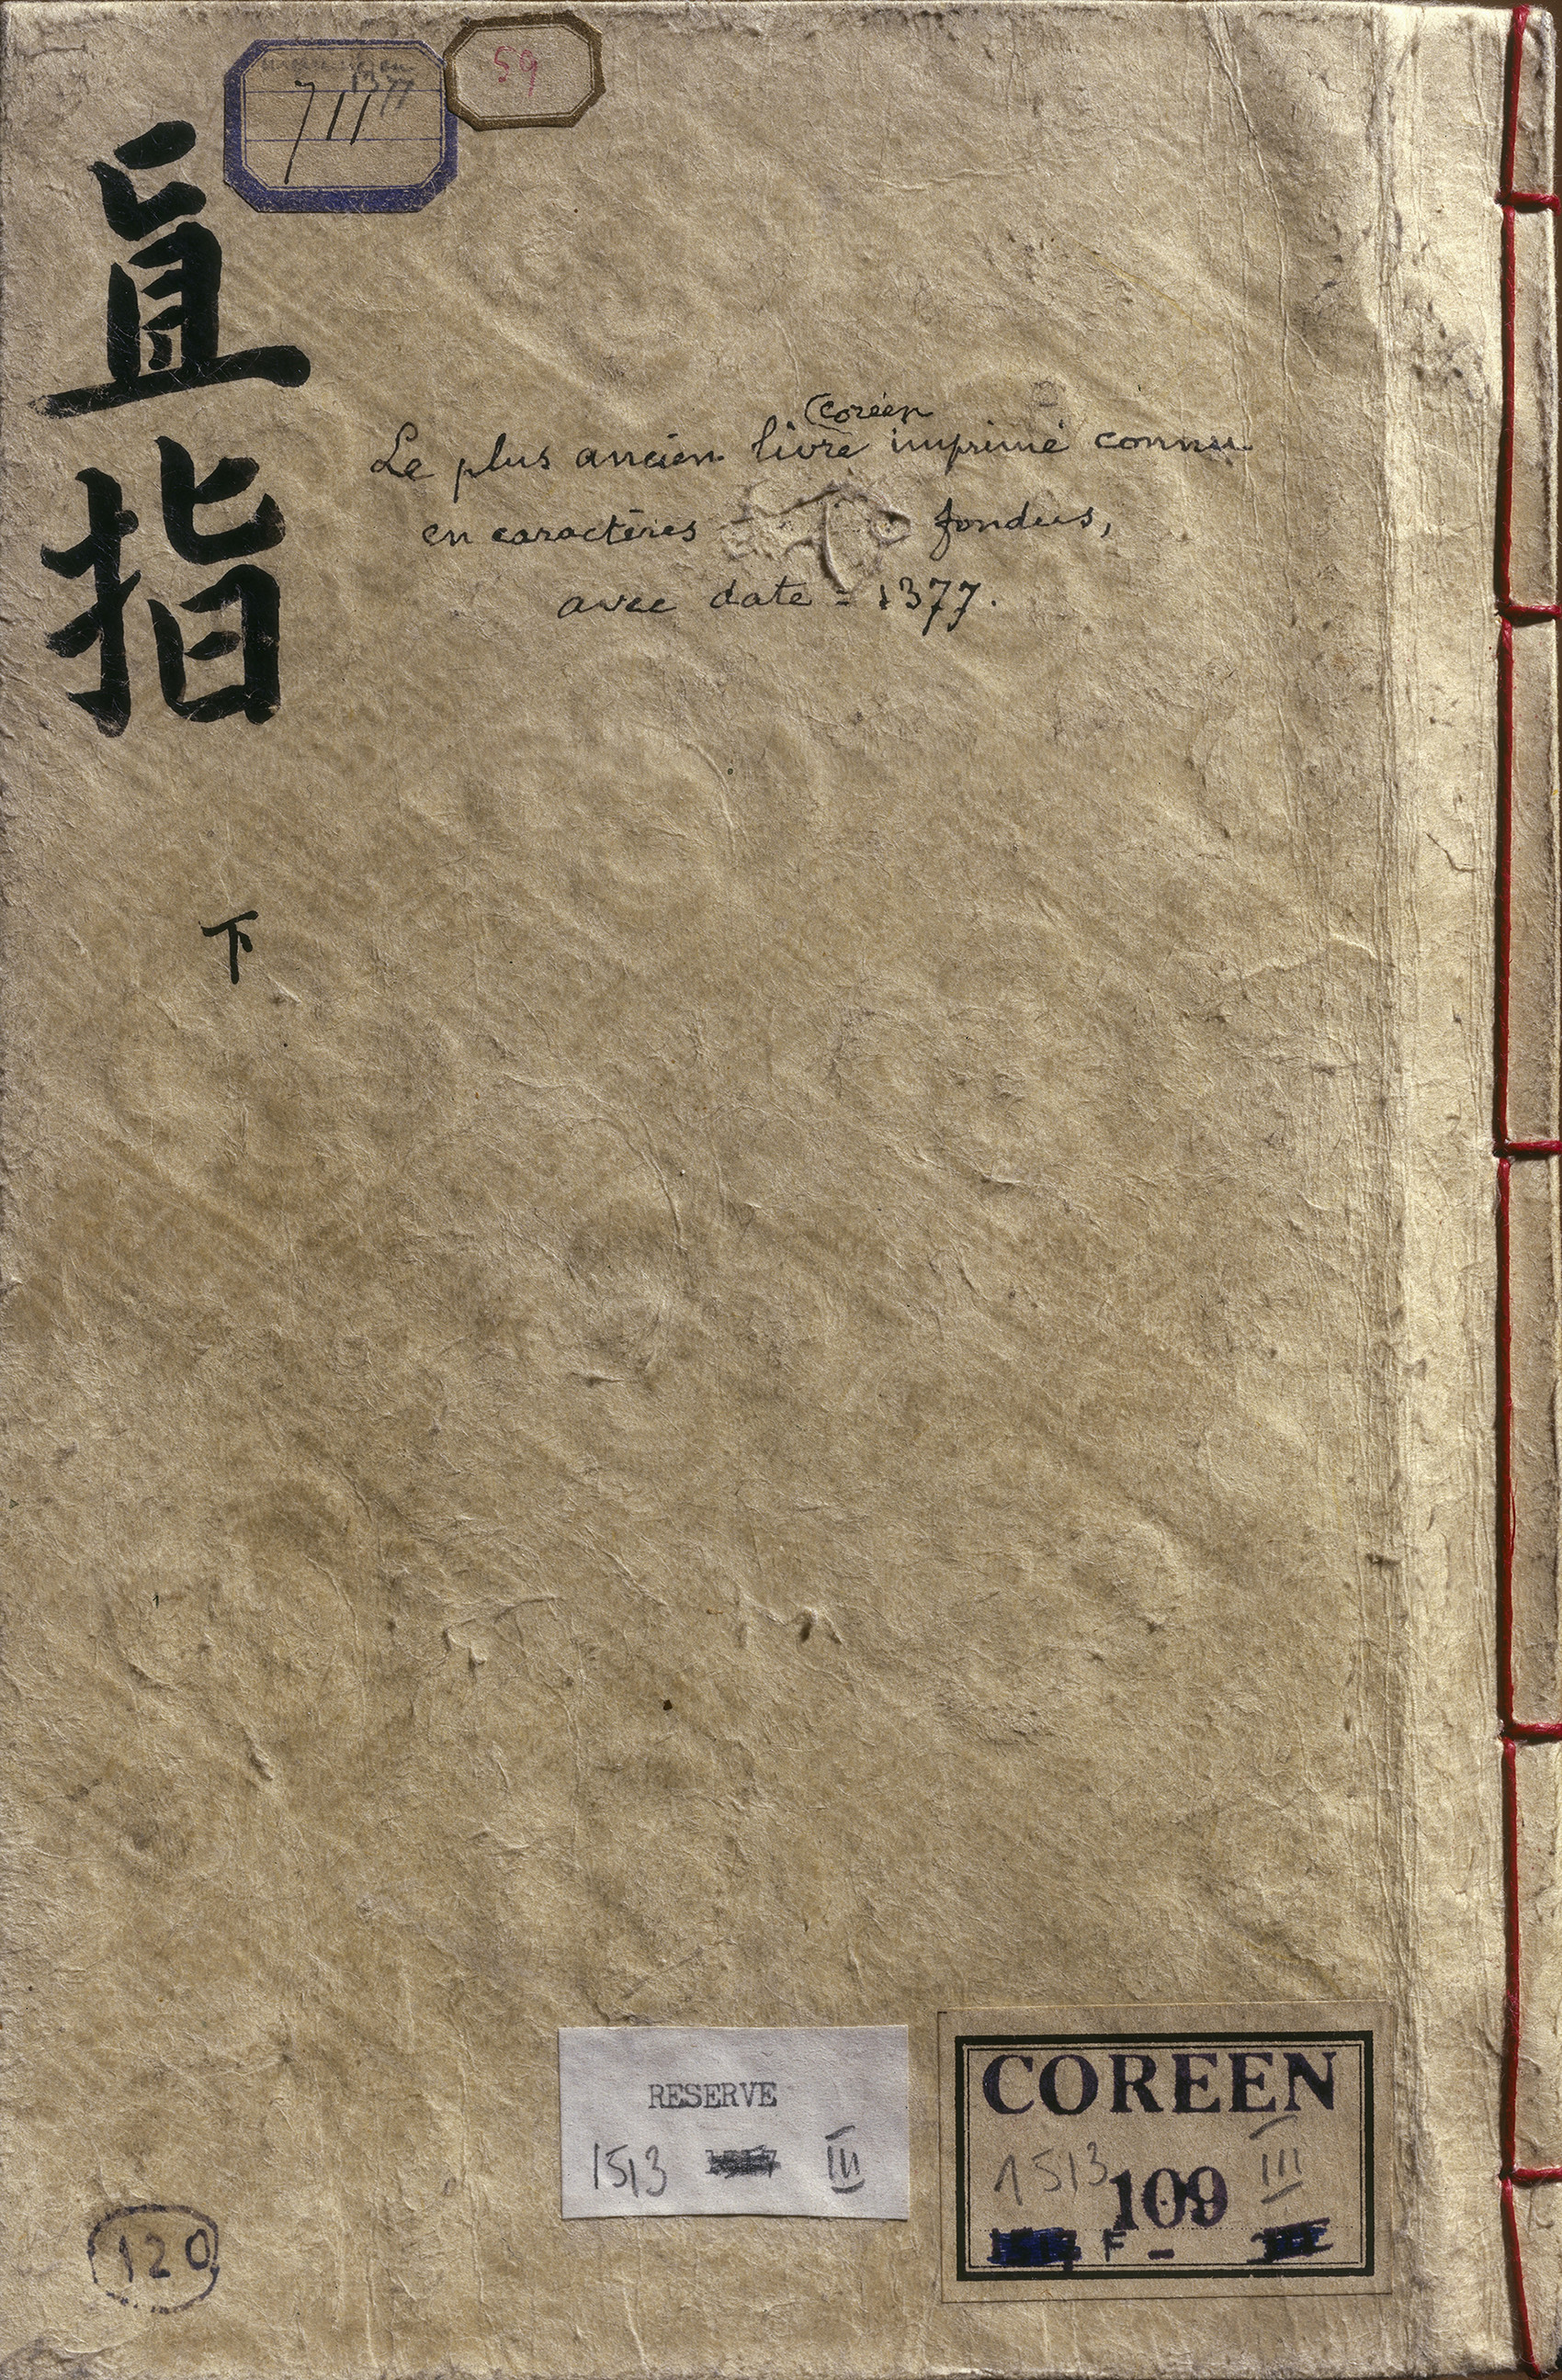 Le Jikji : couverture de l’édition typographique de 1377